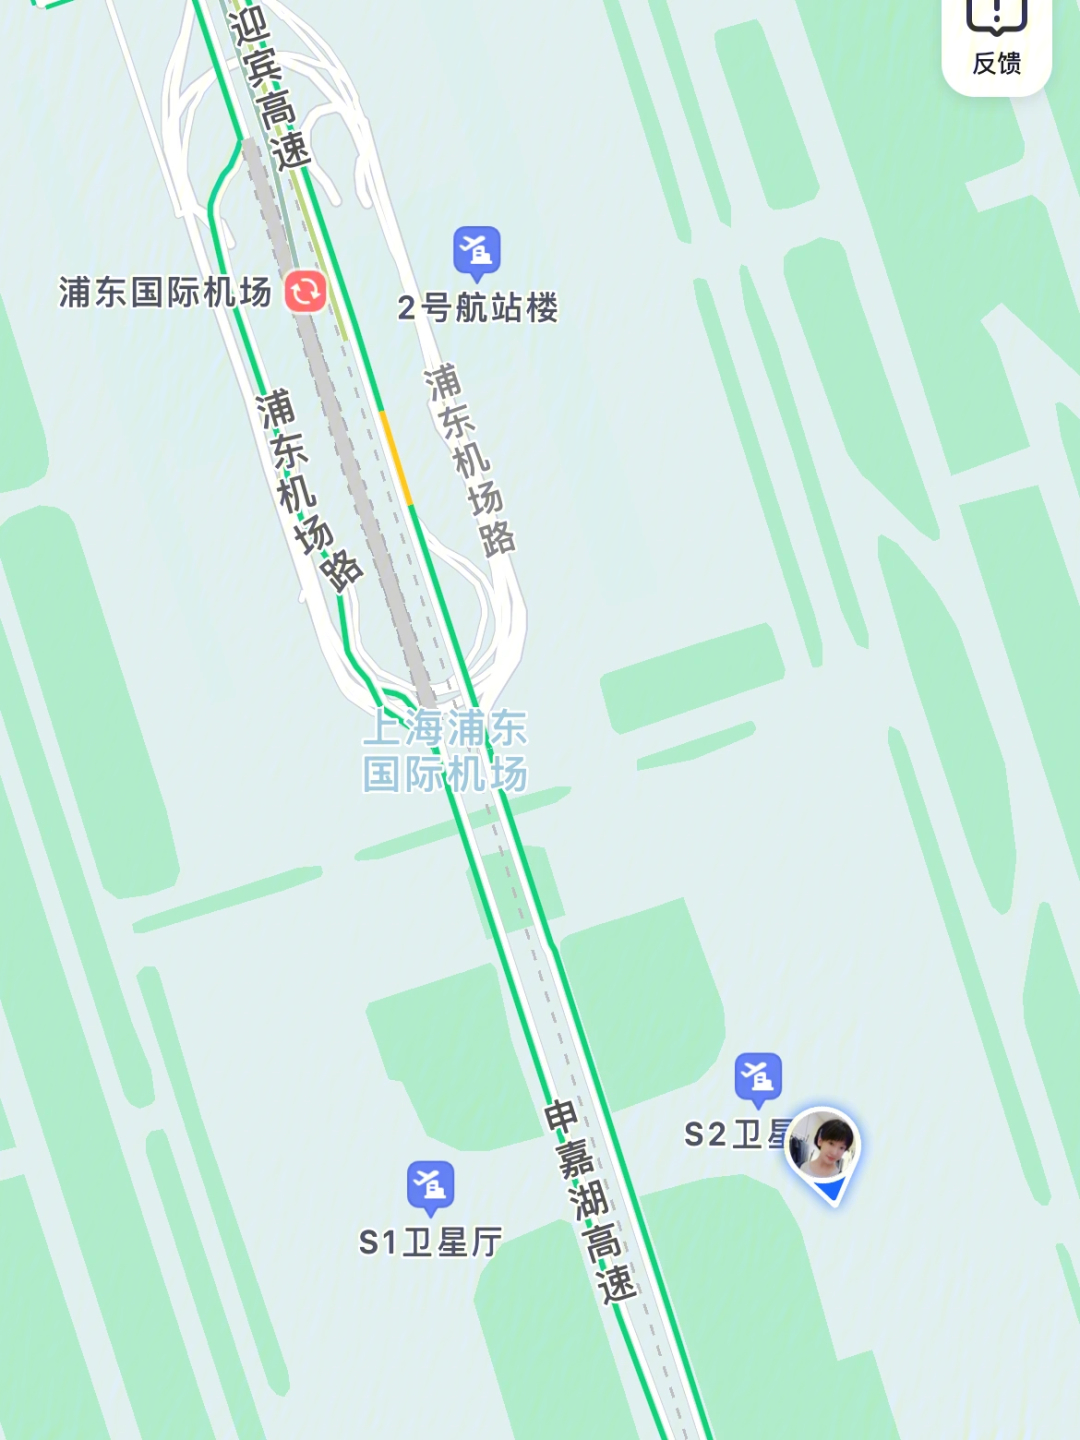 上海浦东机场s2卫星厅h开头的登机口看这里